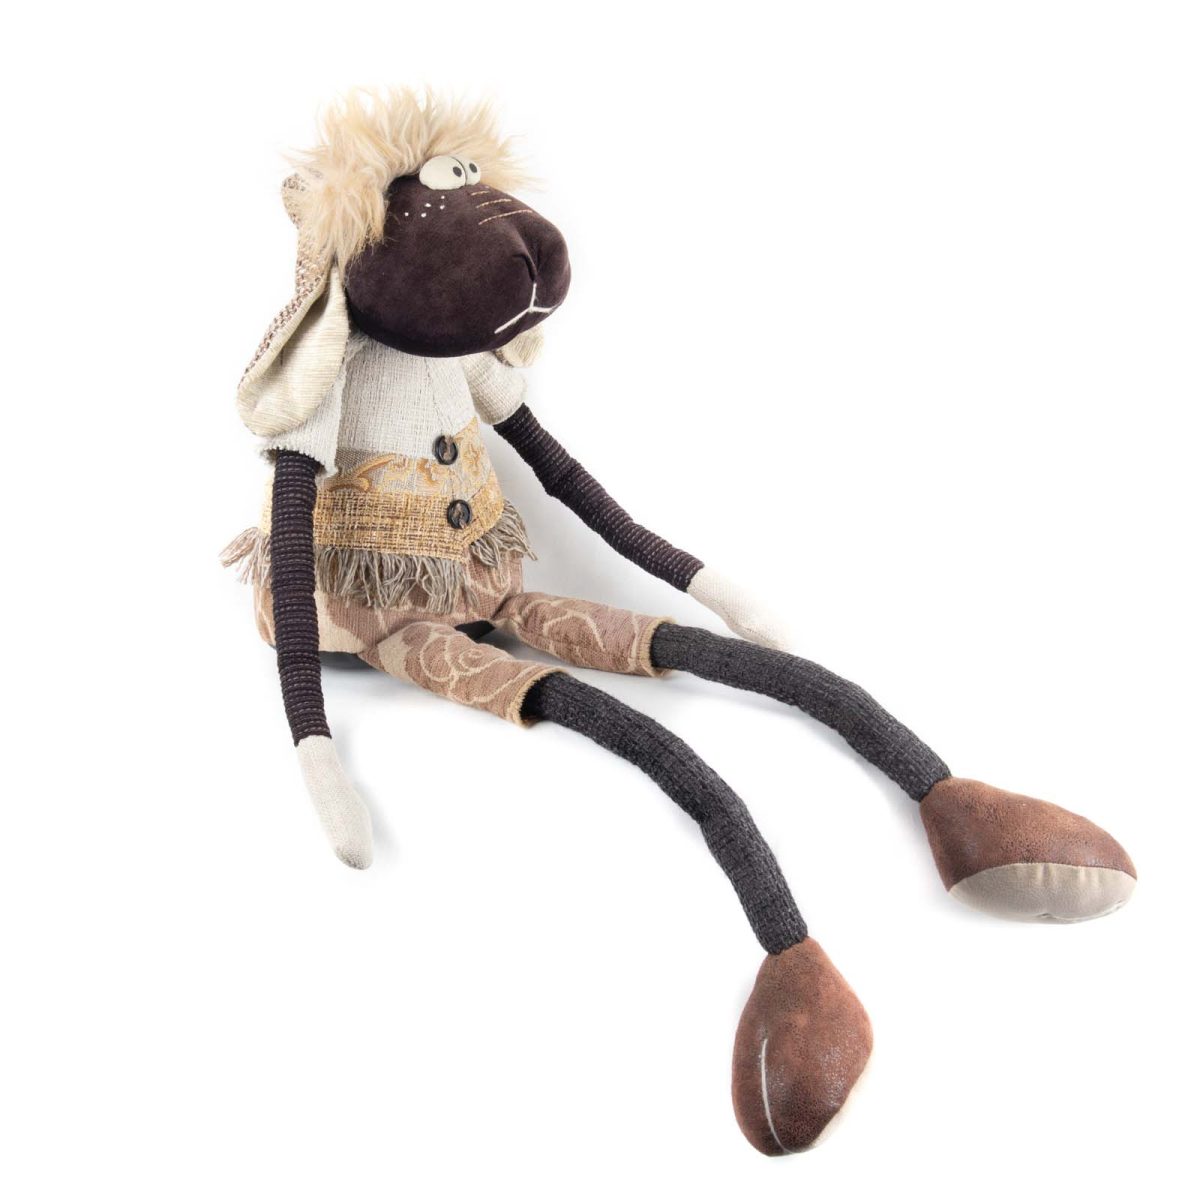 Sheep Stuffed Animal Toy, Handmade with Love 